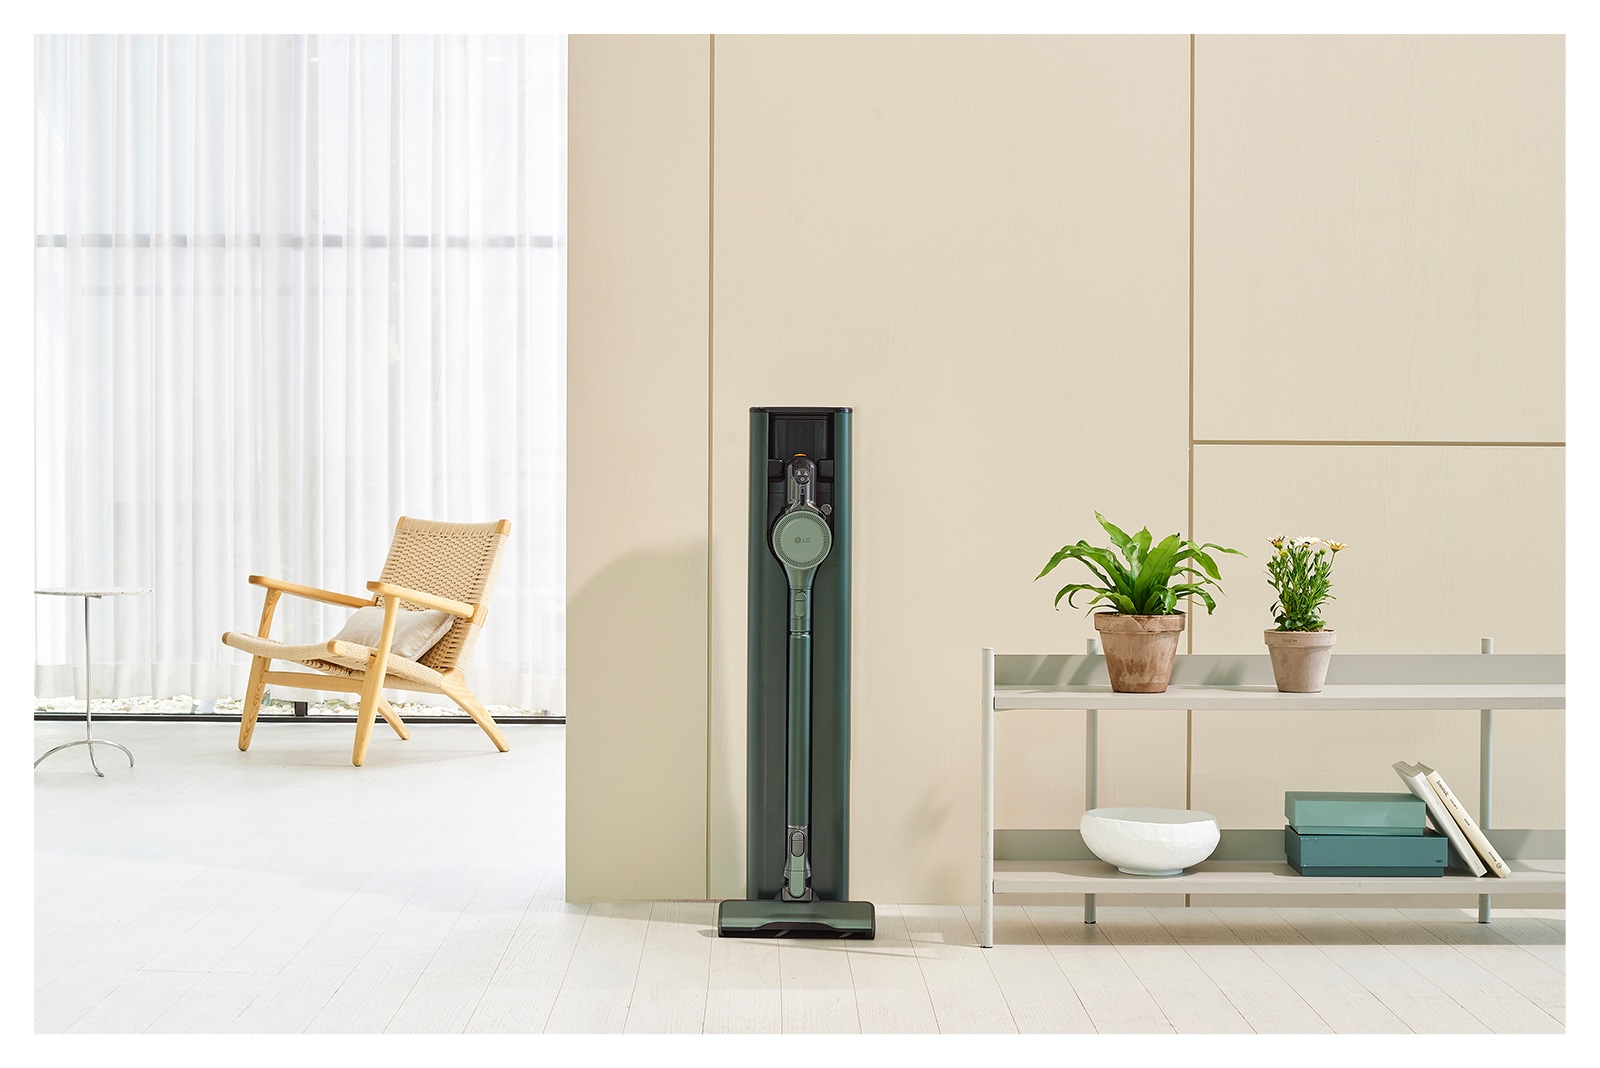 顯示石墨綠色的 LG CordZero All-in-One 濕拖無線吸塵器 Objet Collection 放置在現代客廳內。